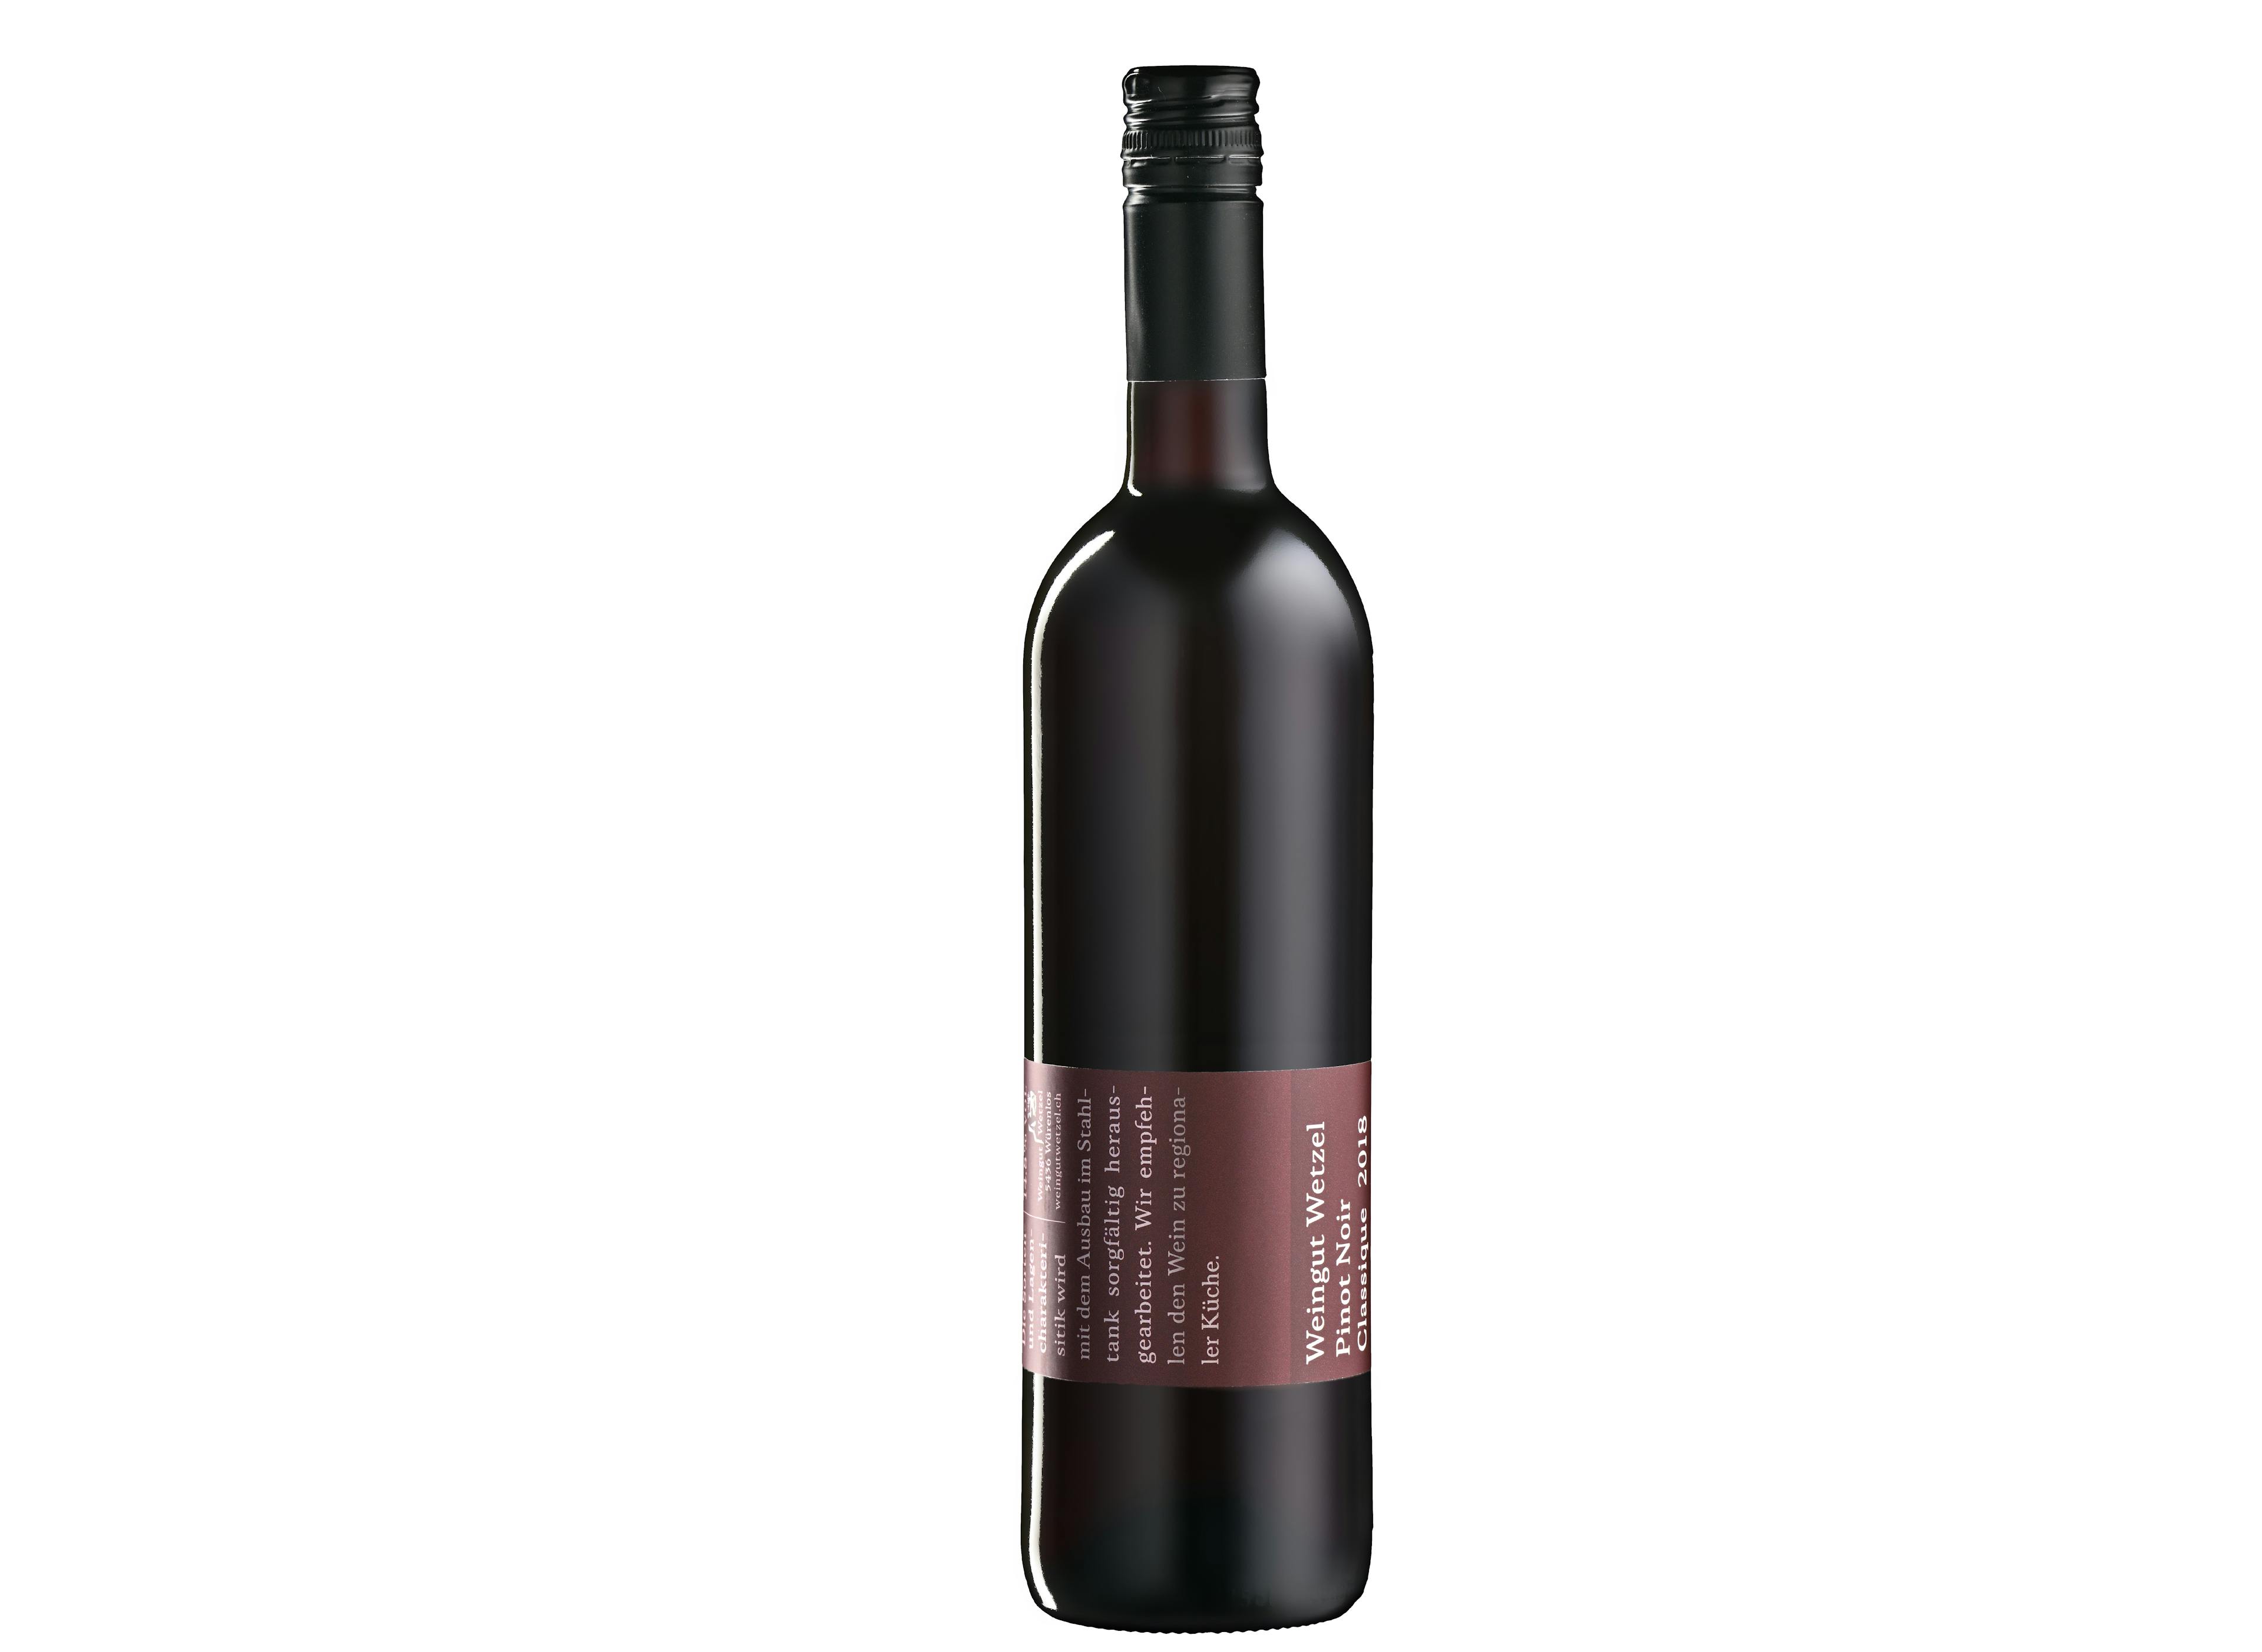 Domaine Wetzel Pinot Noir Classique, produit artisanal en vente directe en Suisse